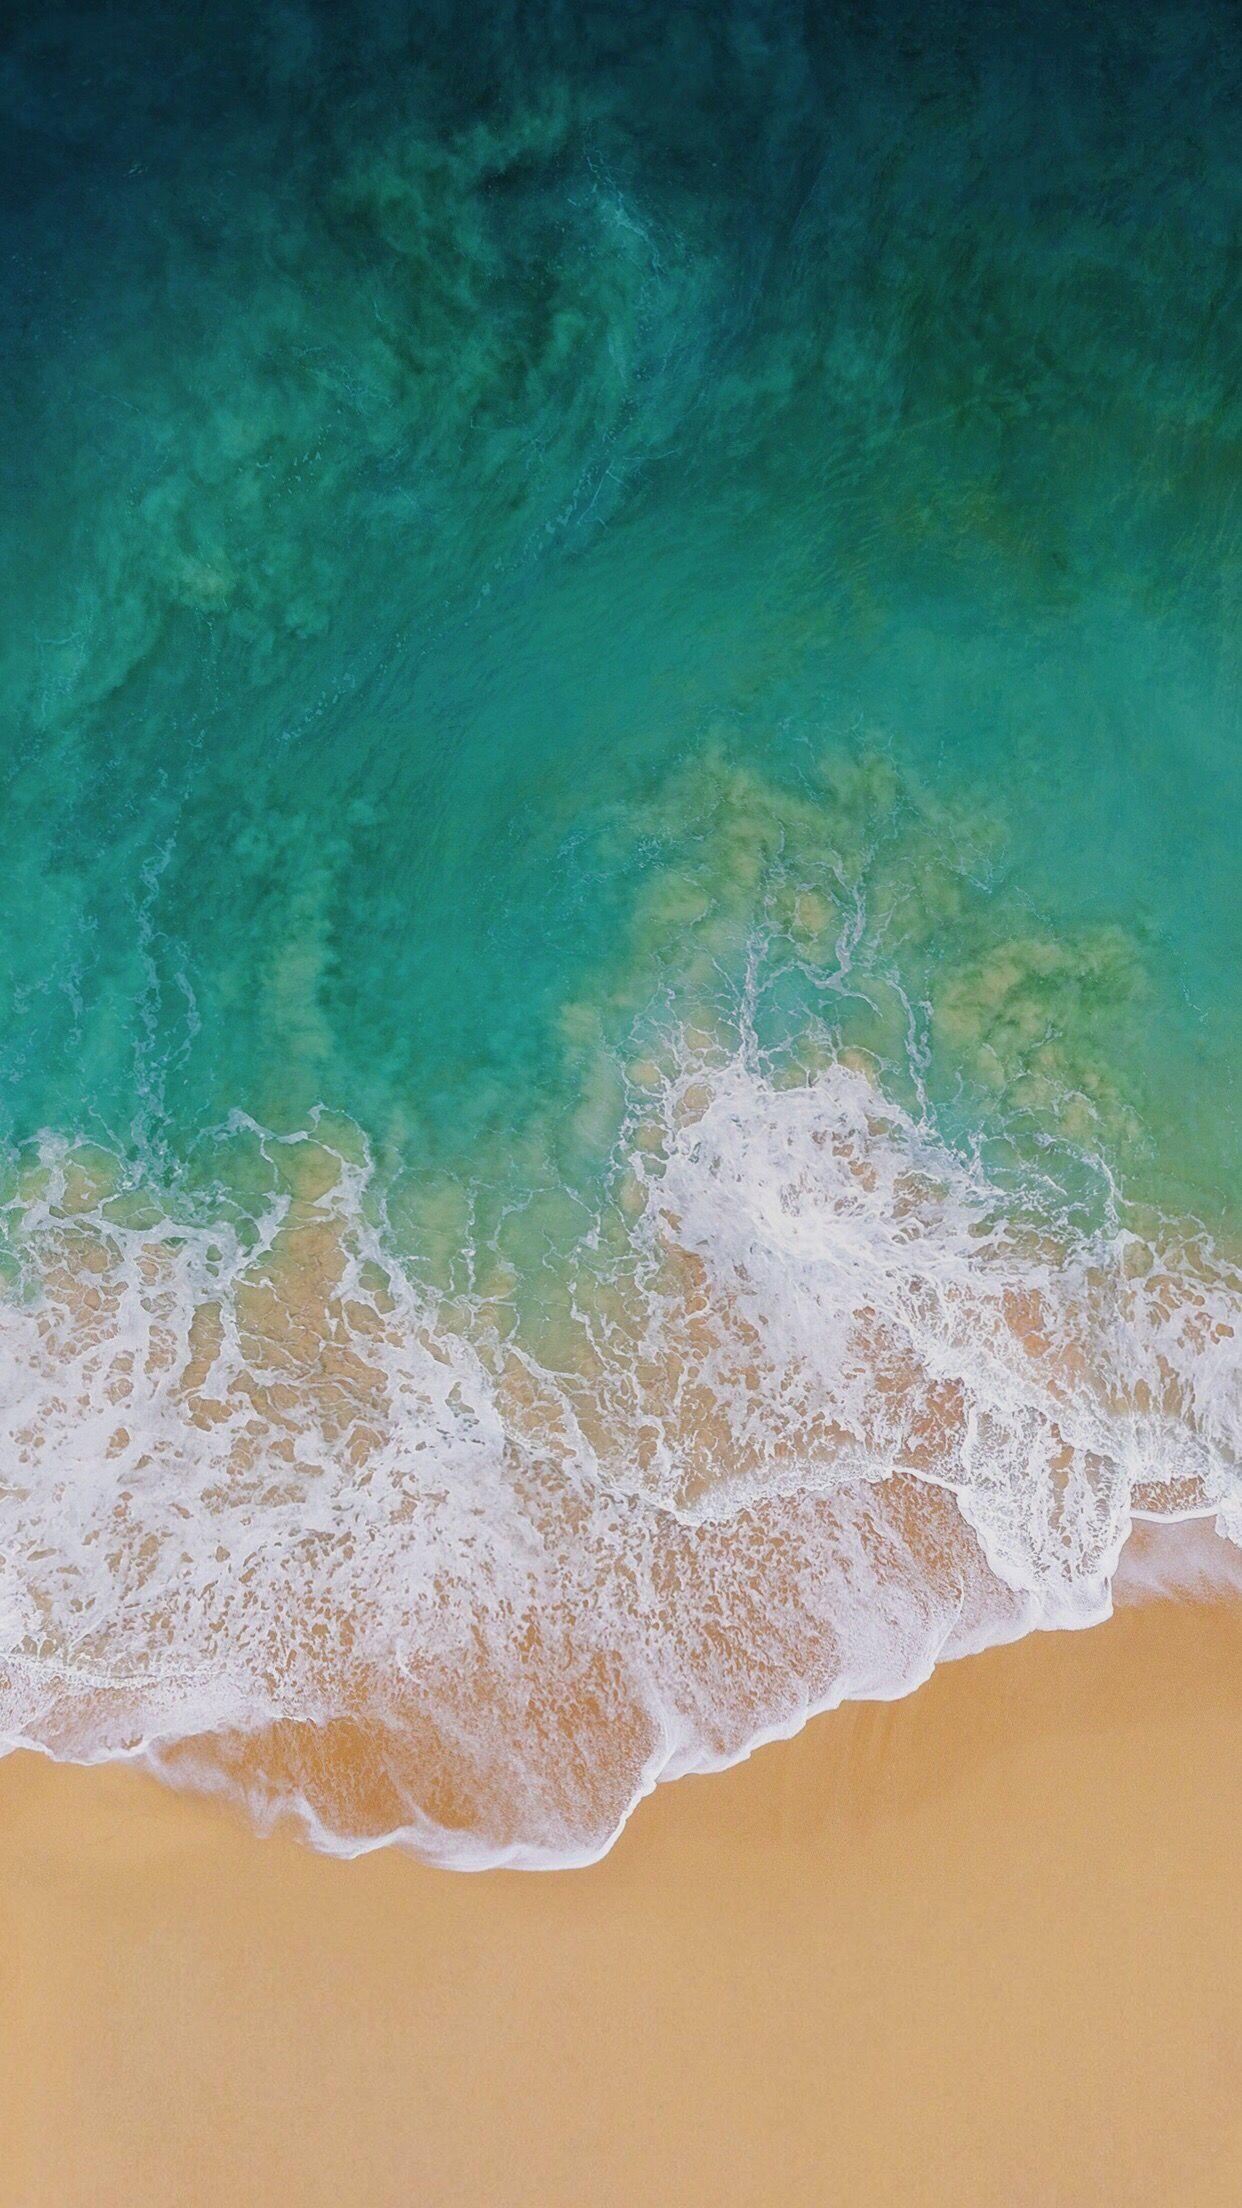 Tìm hiểu và khám phá hơn với hình nền iOS 11 tuyệt đẹp từ Wallpaper Cave. Cùng thưởng thức những hình ảnh đẹp nhất của bãi biển, đại dương và thiên nhiên tự nhiên được chọn lọc cẩn thận. Chắc chắn bạn sẽ tìm được kiệt tác hoàn hảo cho màn hình thiết bị của mình.